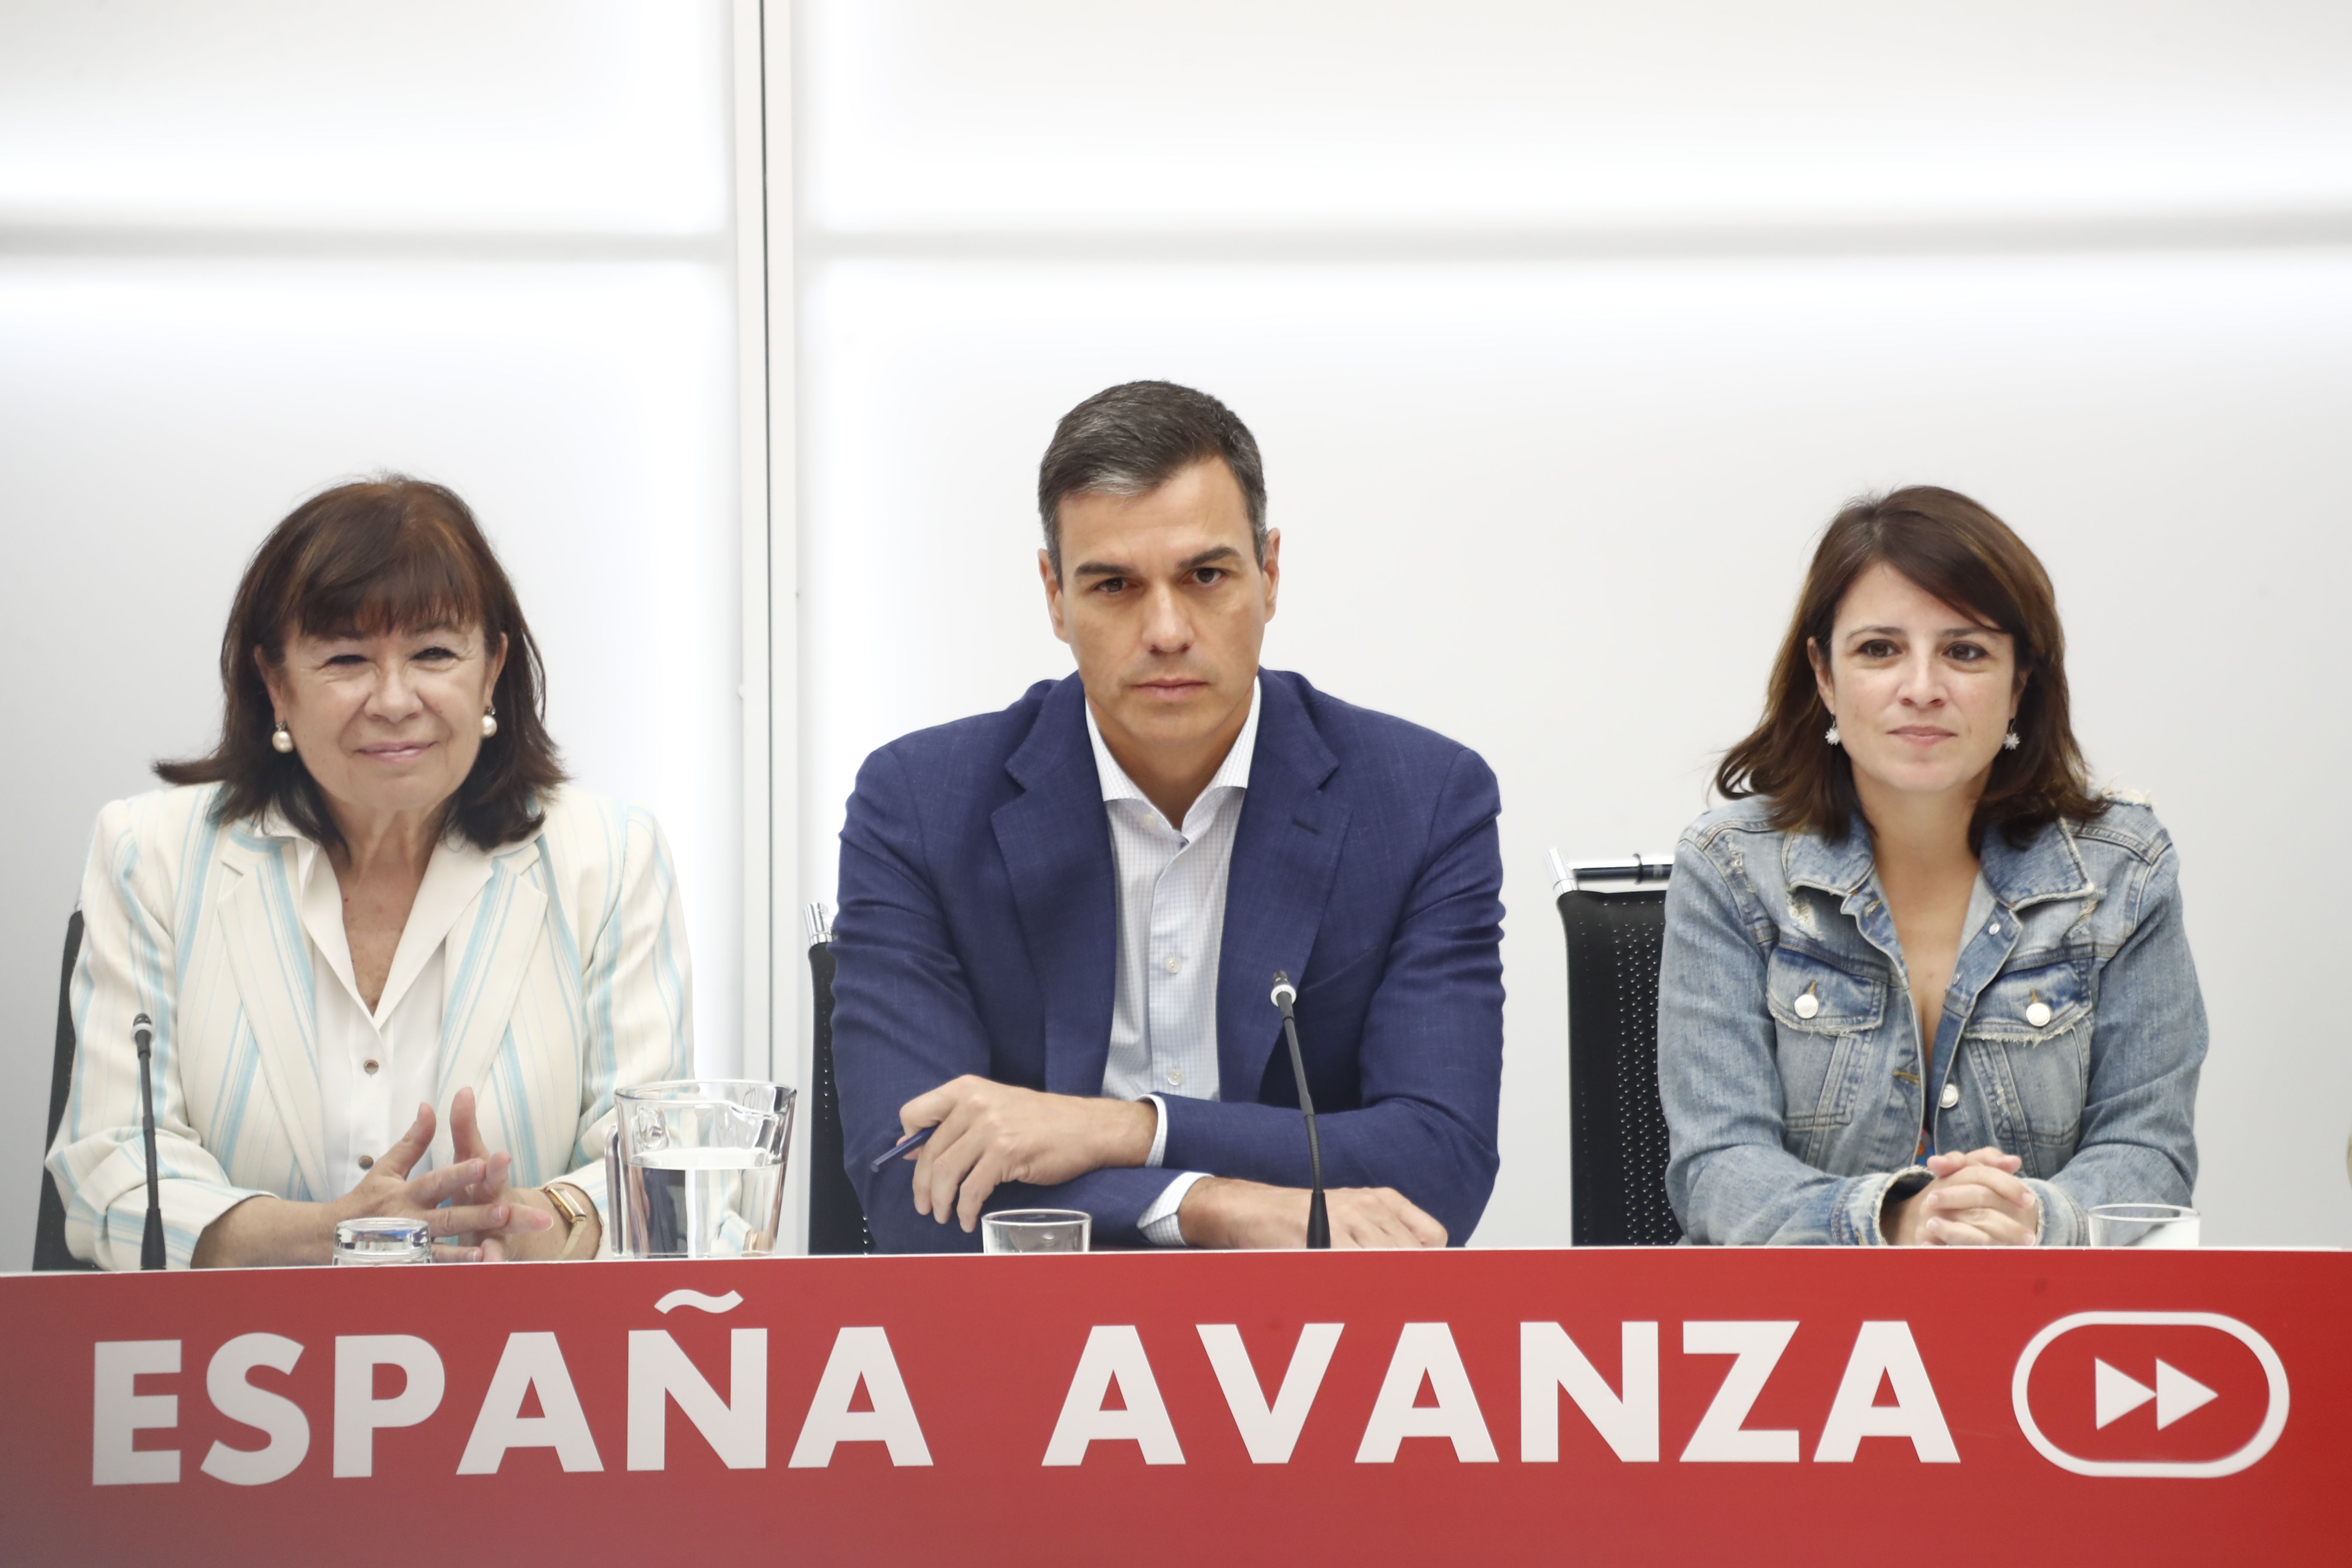 DIRECTO: Pedro Sánchez presenta el programa del Gobierno del PSOE para pactar con Podemos